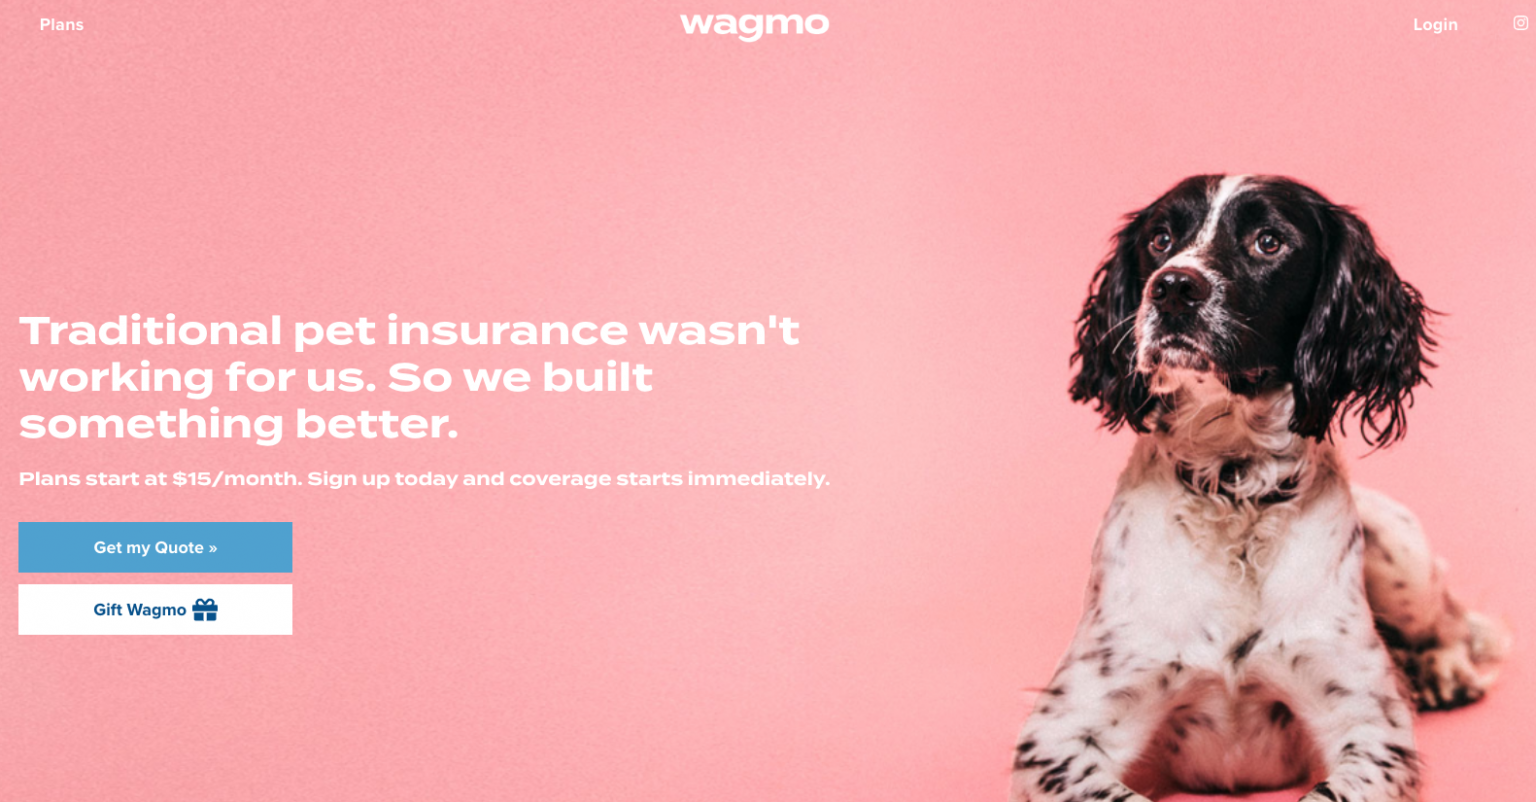 Wagmo raises 3 million